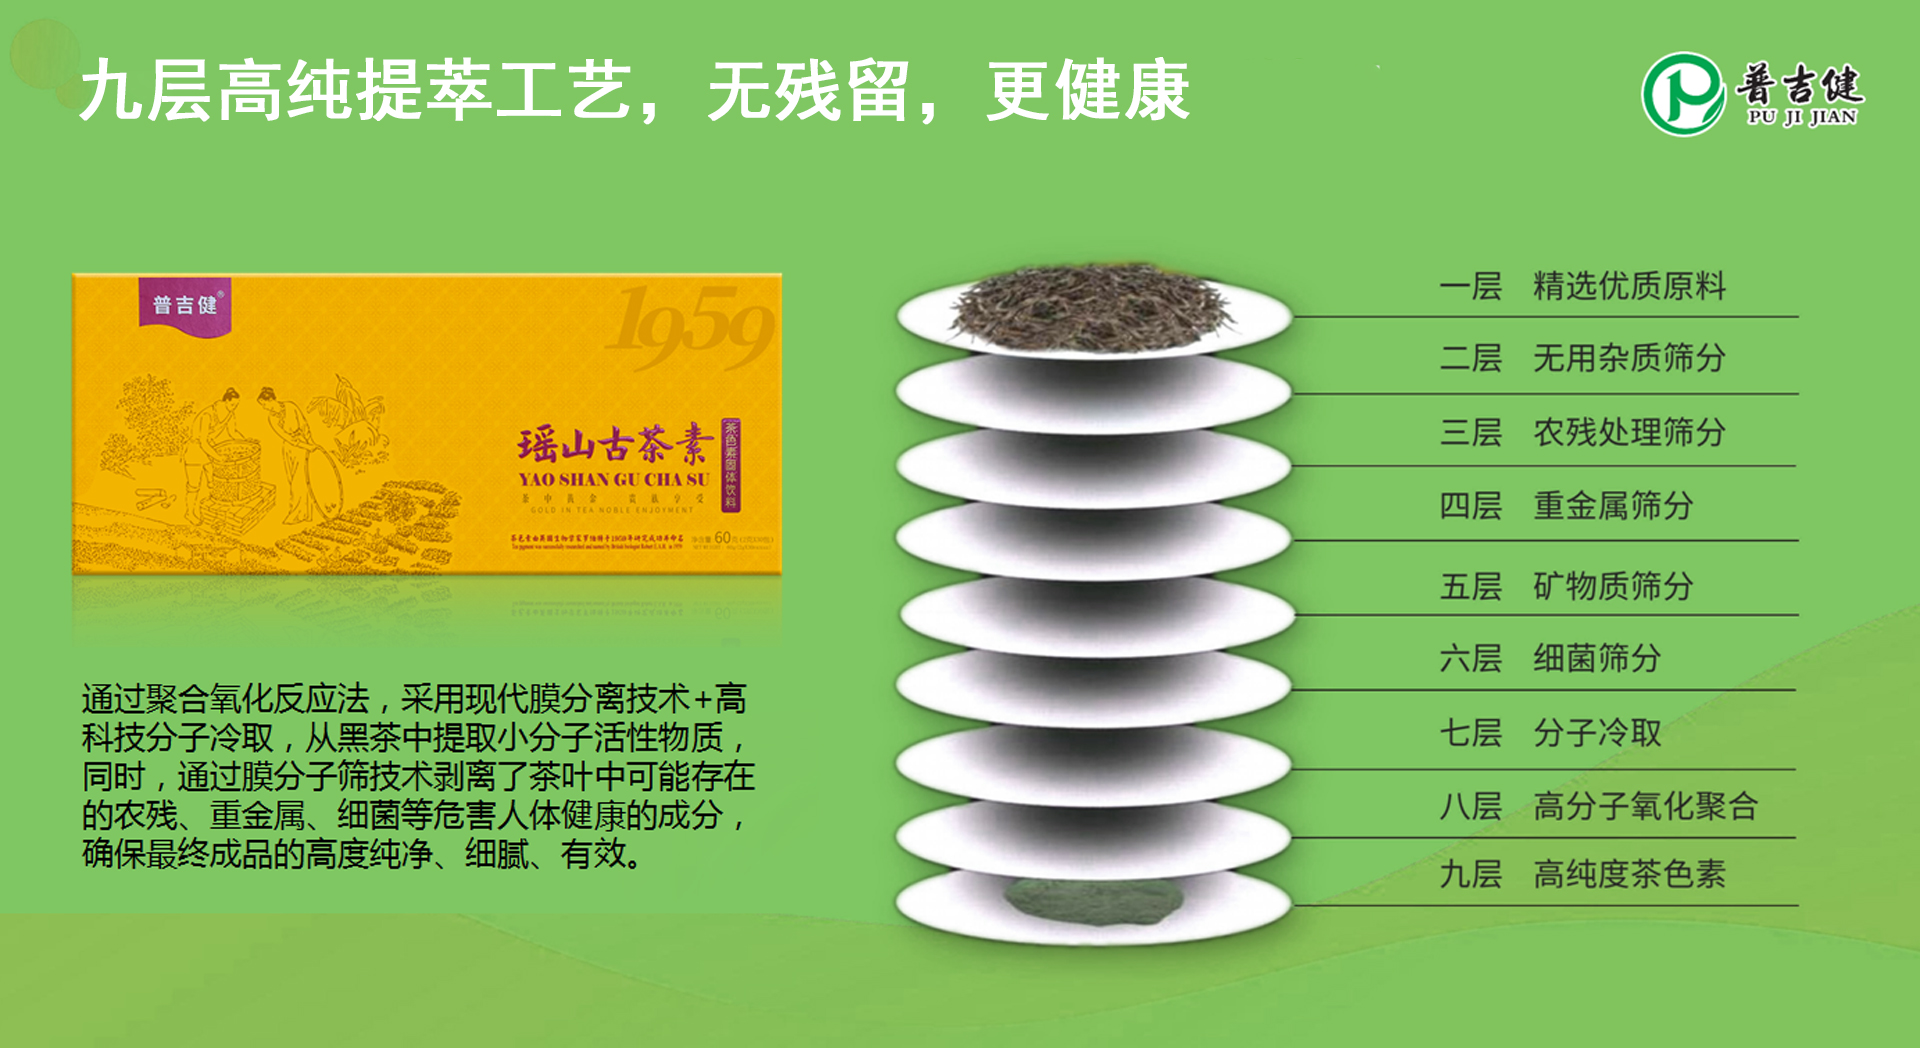 中国首家黑茶茶色素品牌- 专访普吉健茶色素